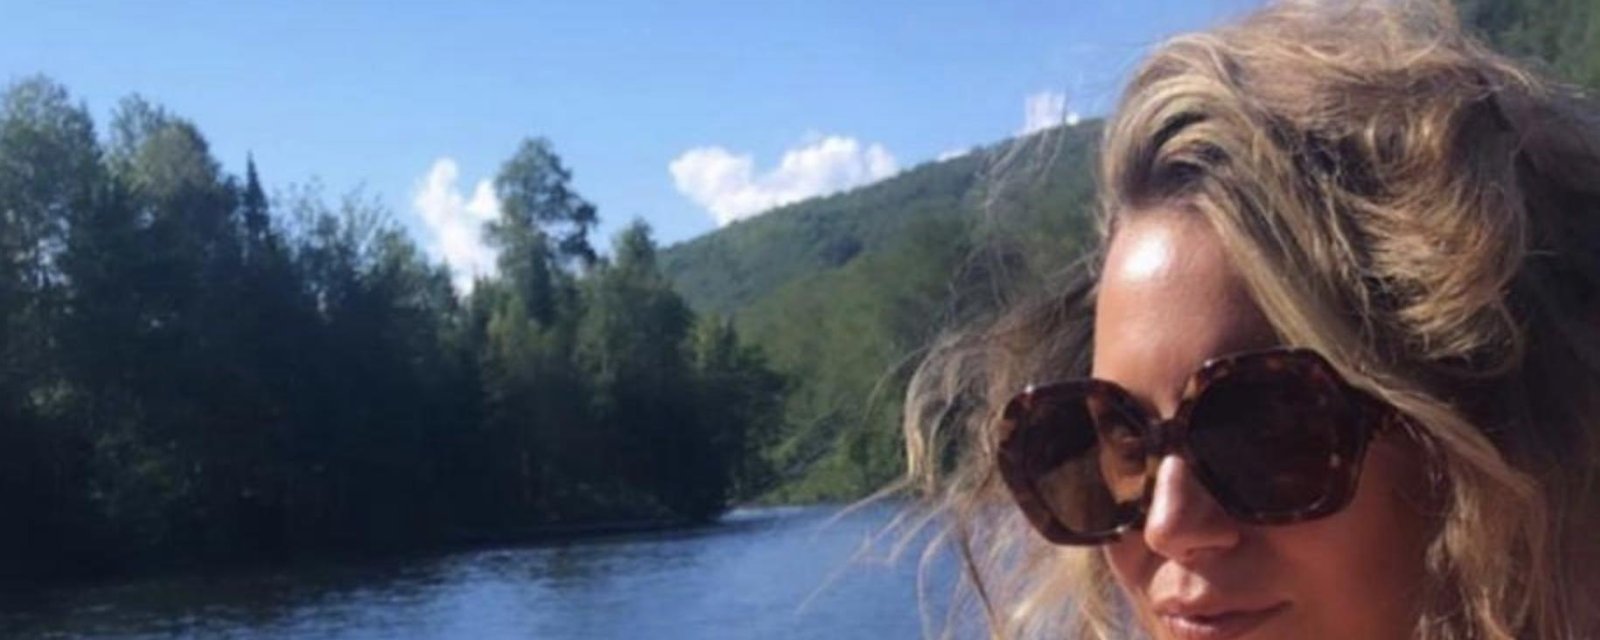 Magalie Lépine-Blondeau vole la vedette avec des magnifiques photos sous le soleil